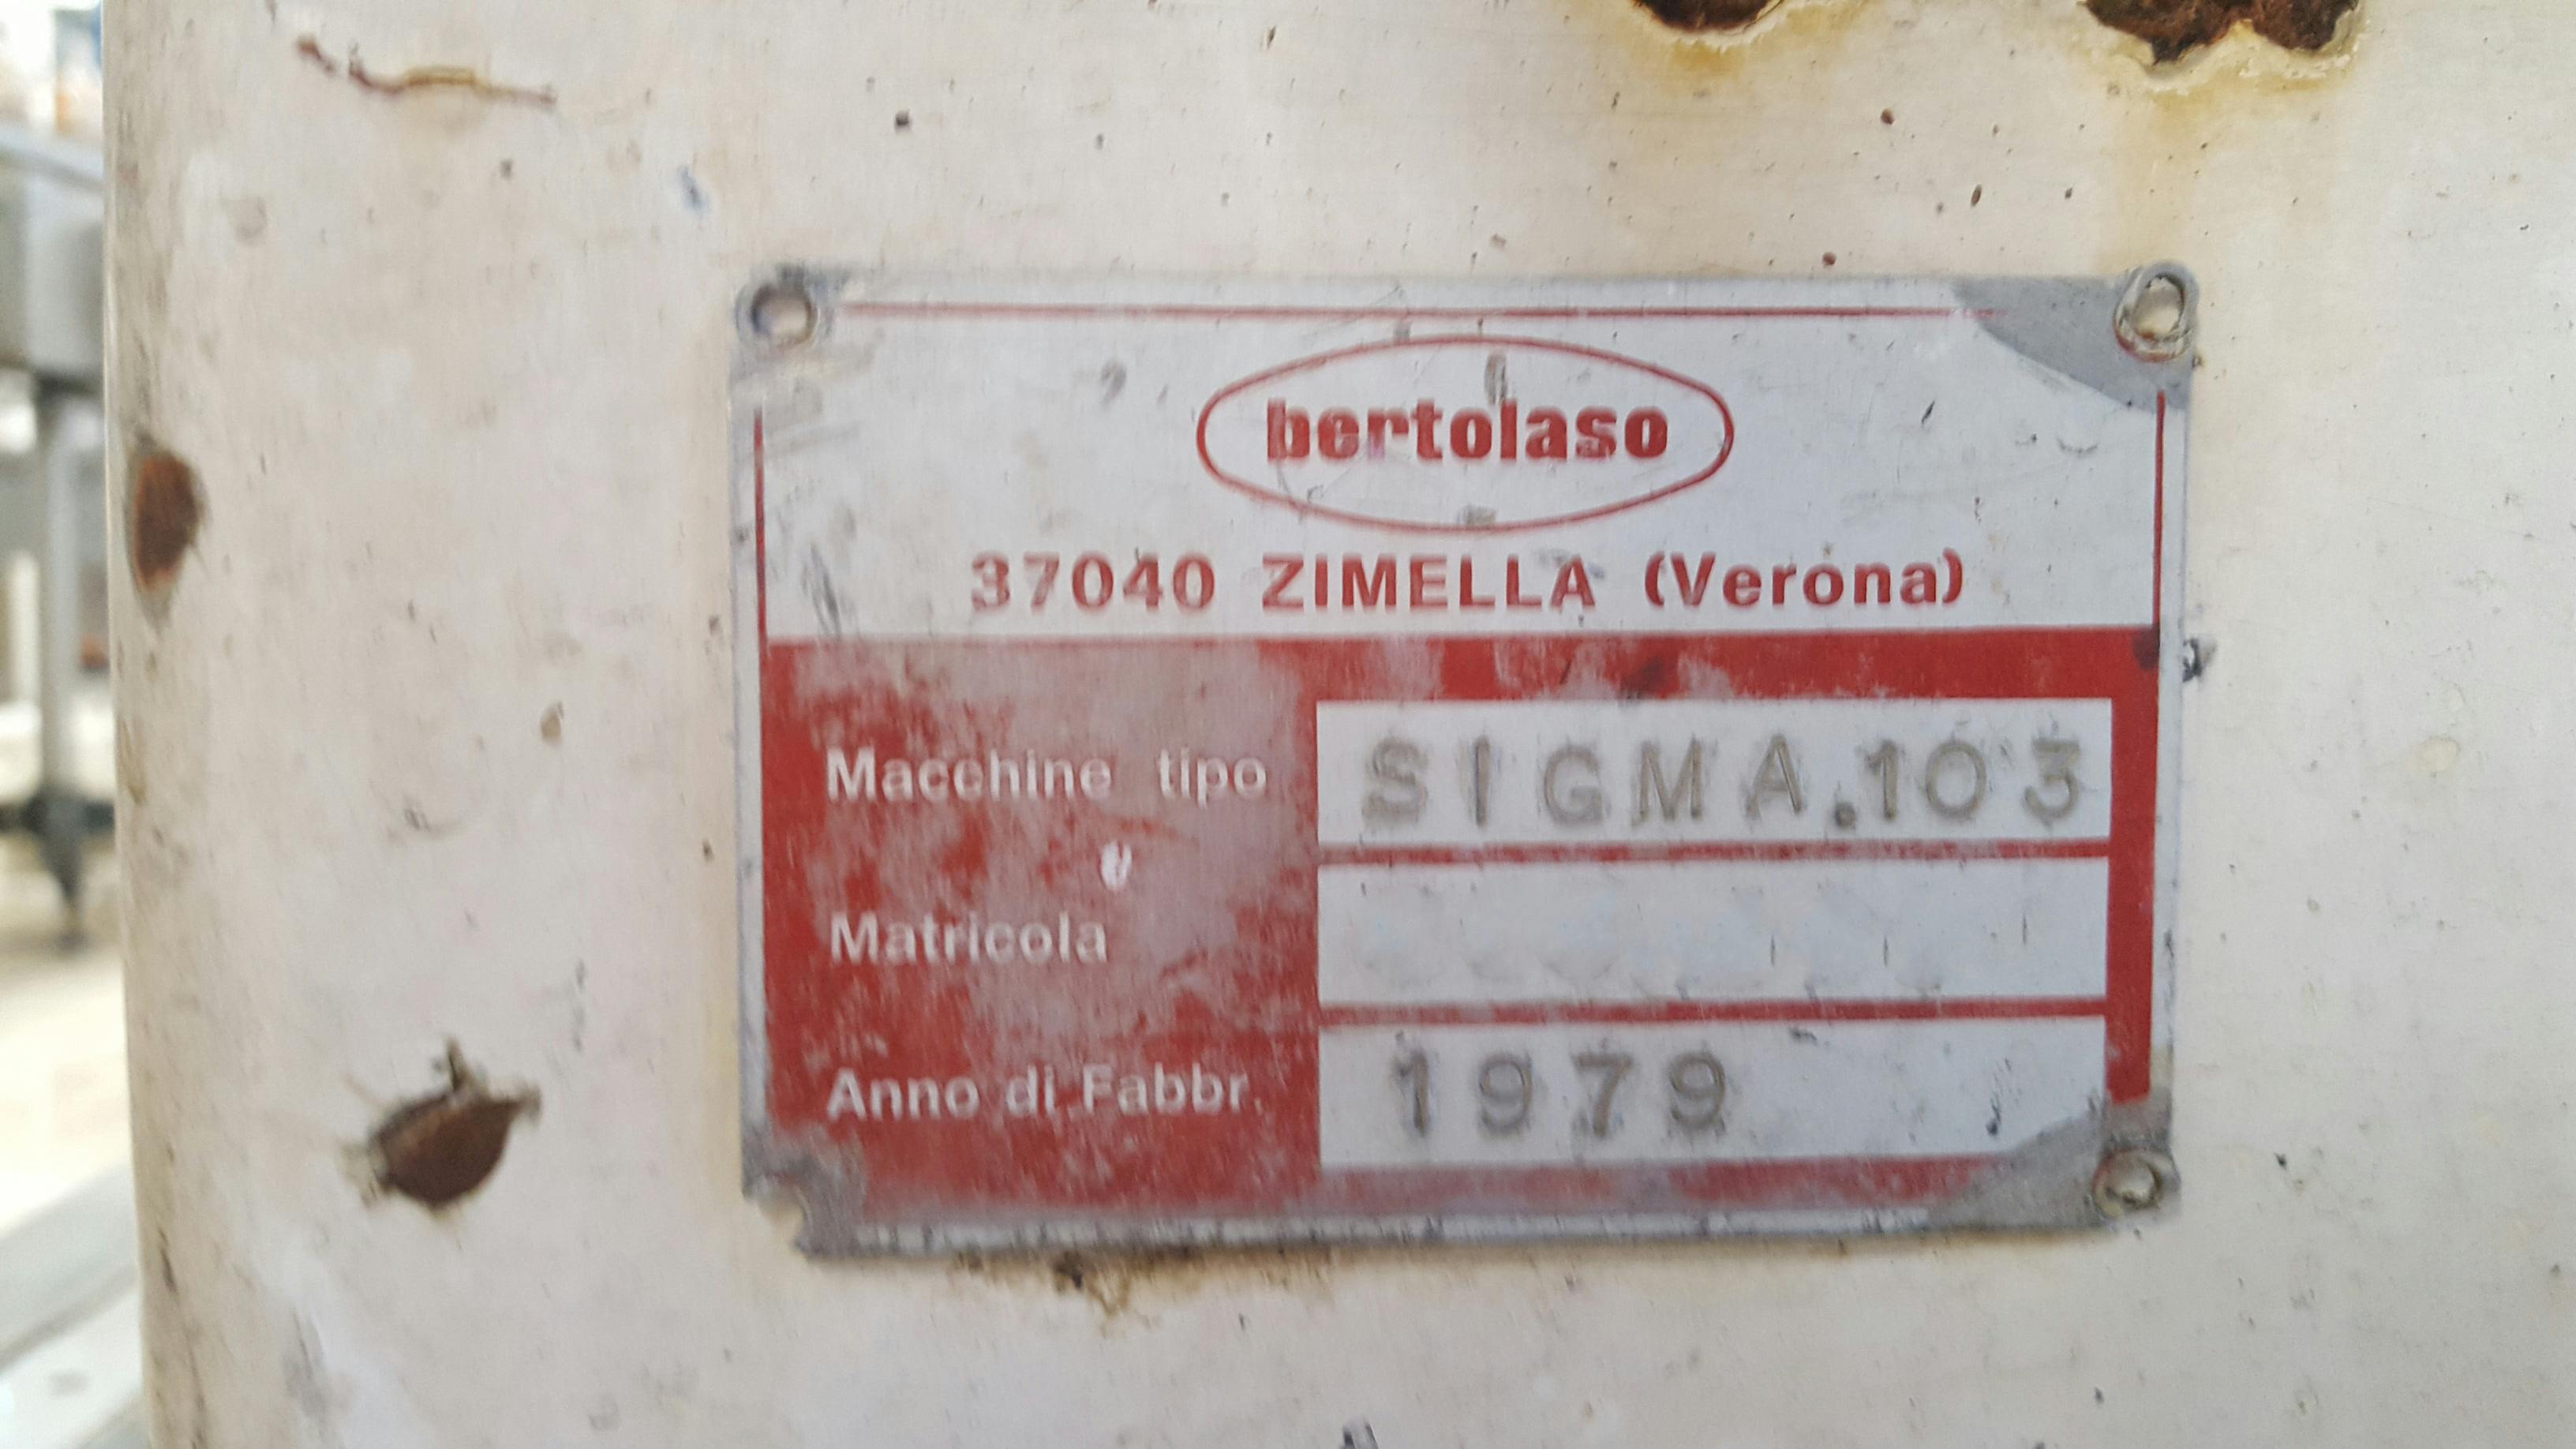 Plaque signalétique of Bertolaso Sigma 103